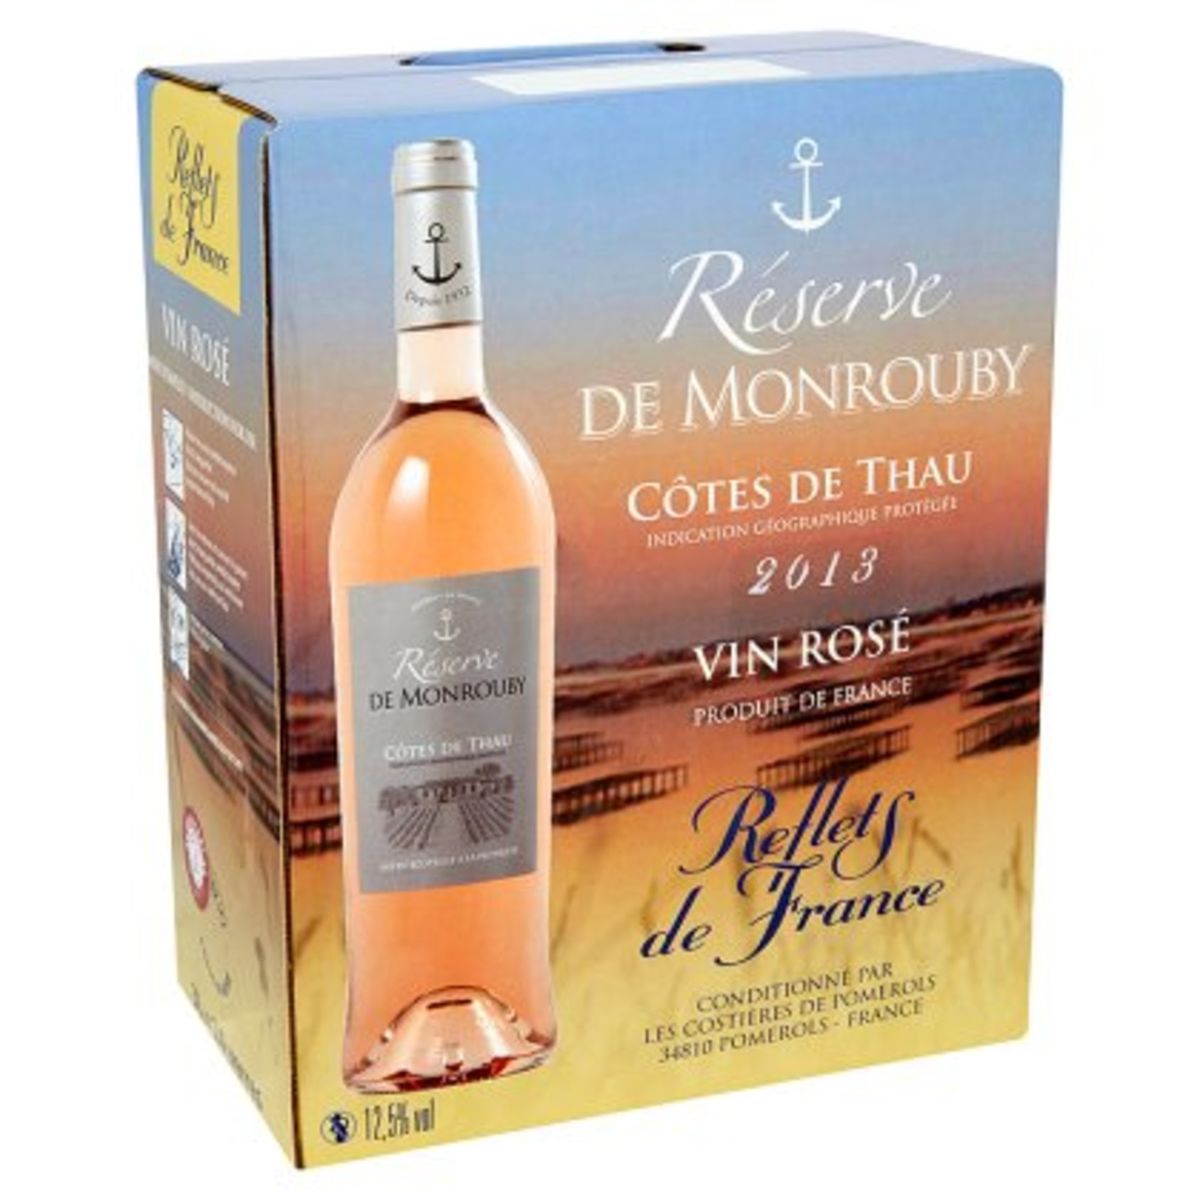 Reflets de France Réserve de Monrouby Rosé